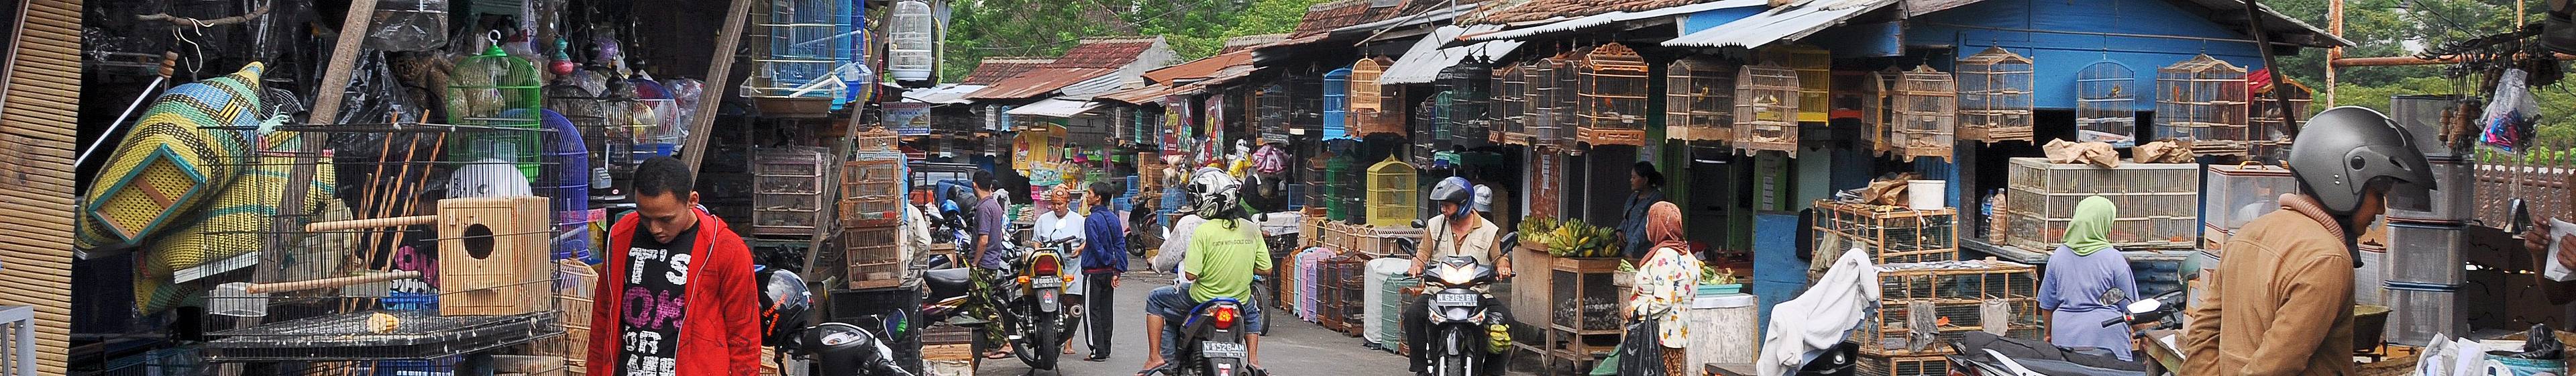  Indonesien  Malang  Sehensw rdigkeiten Evaneos